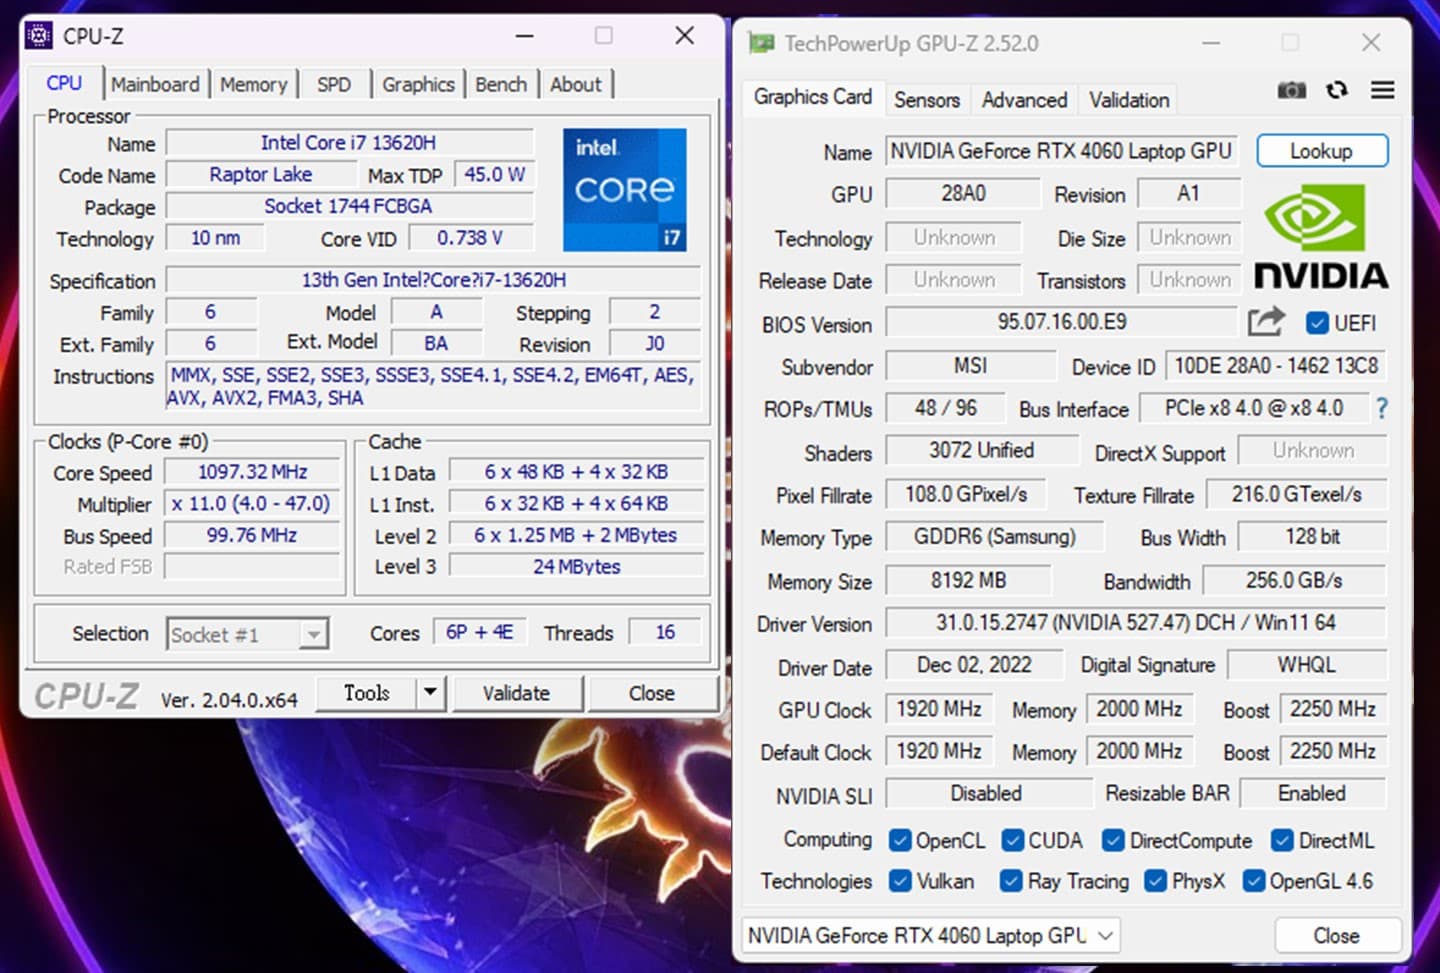 次受測的 Katana 17 載第 13 代 Intel Core i7-13620H 處理器與 NVIDIA GeForce RTX 4060 記型電腦 GPU 的全新組合。